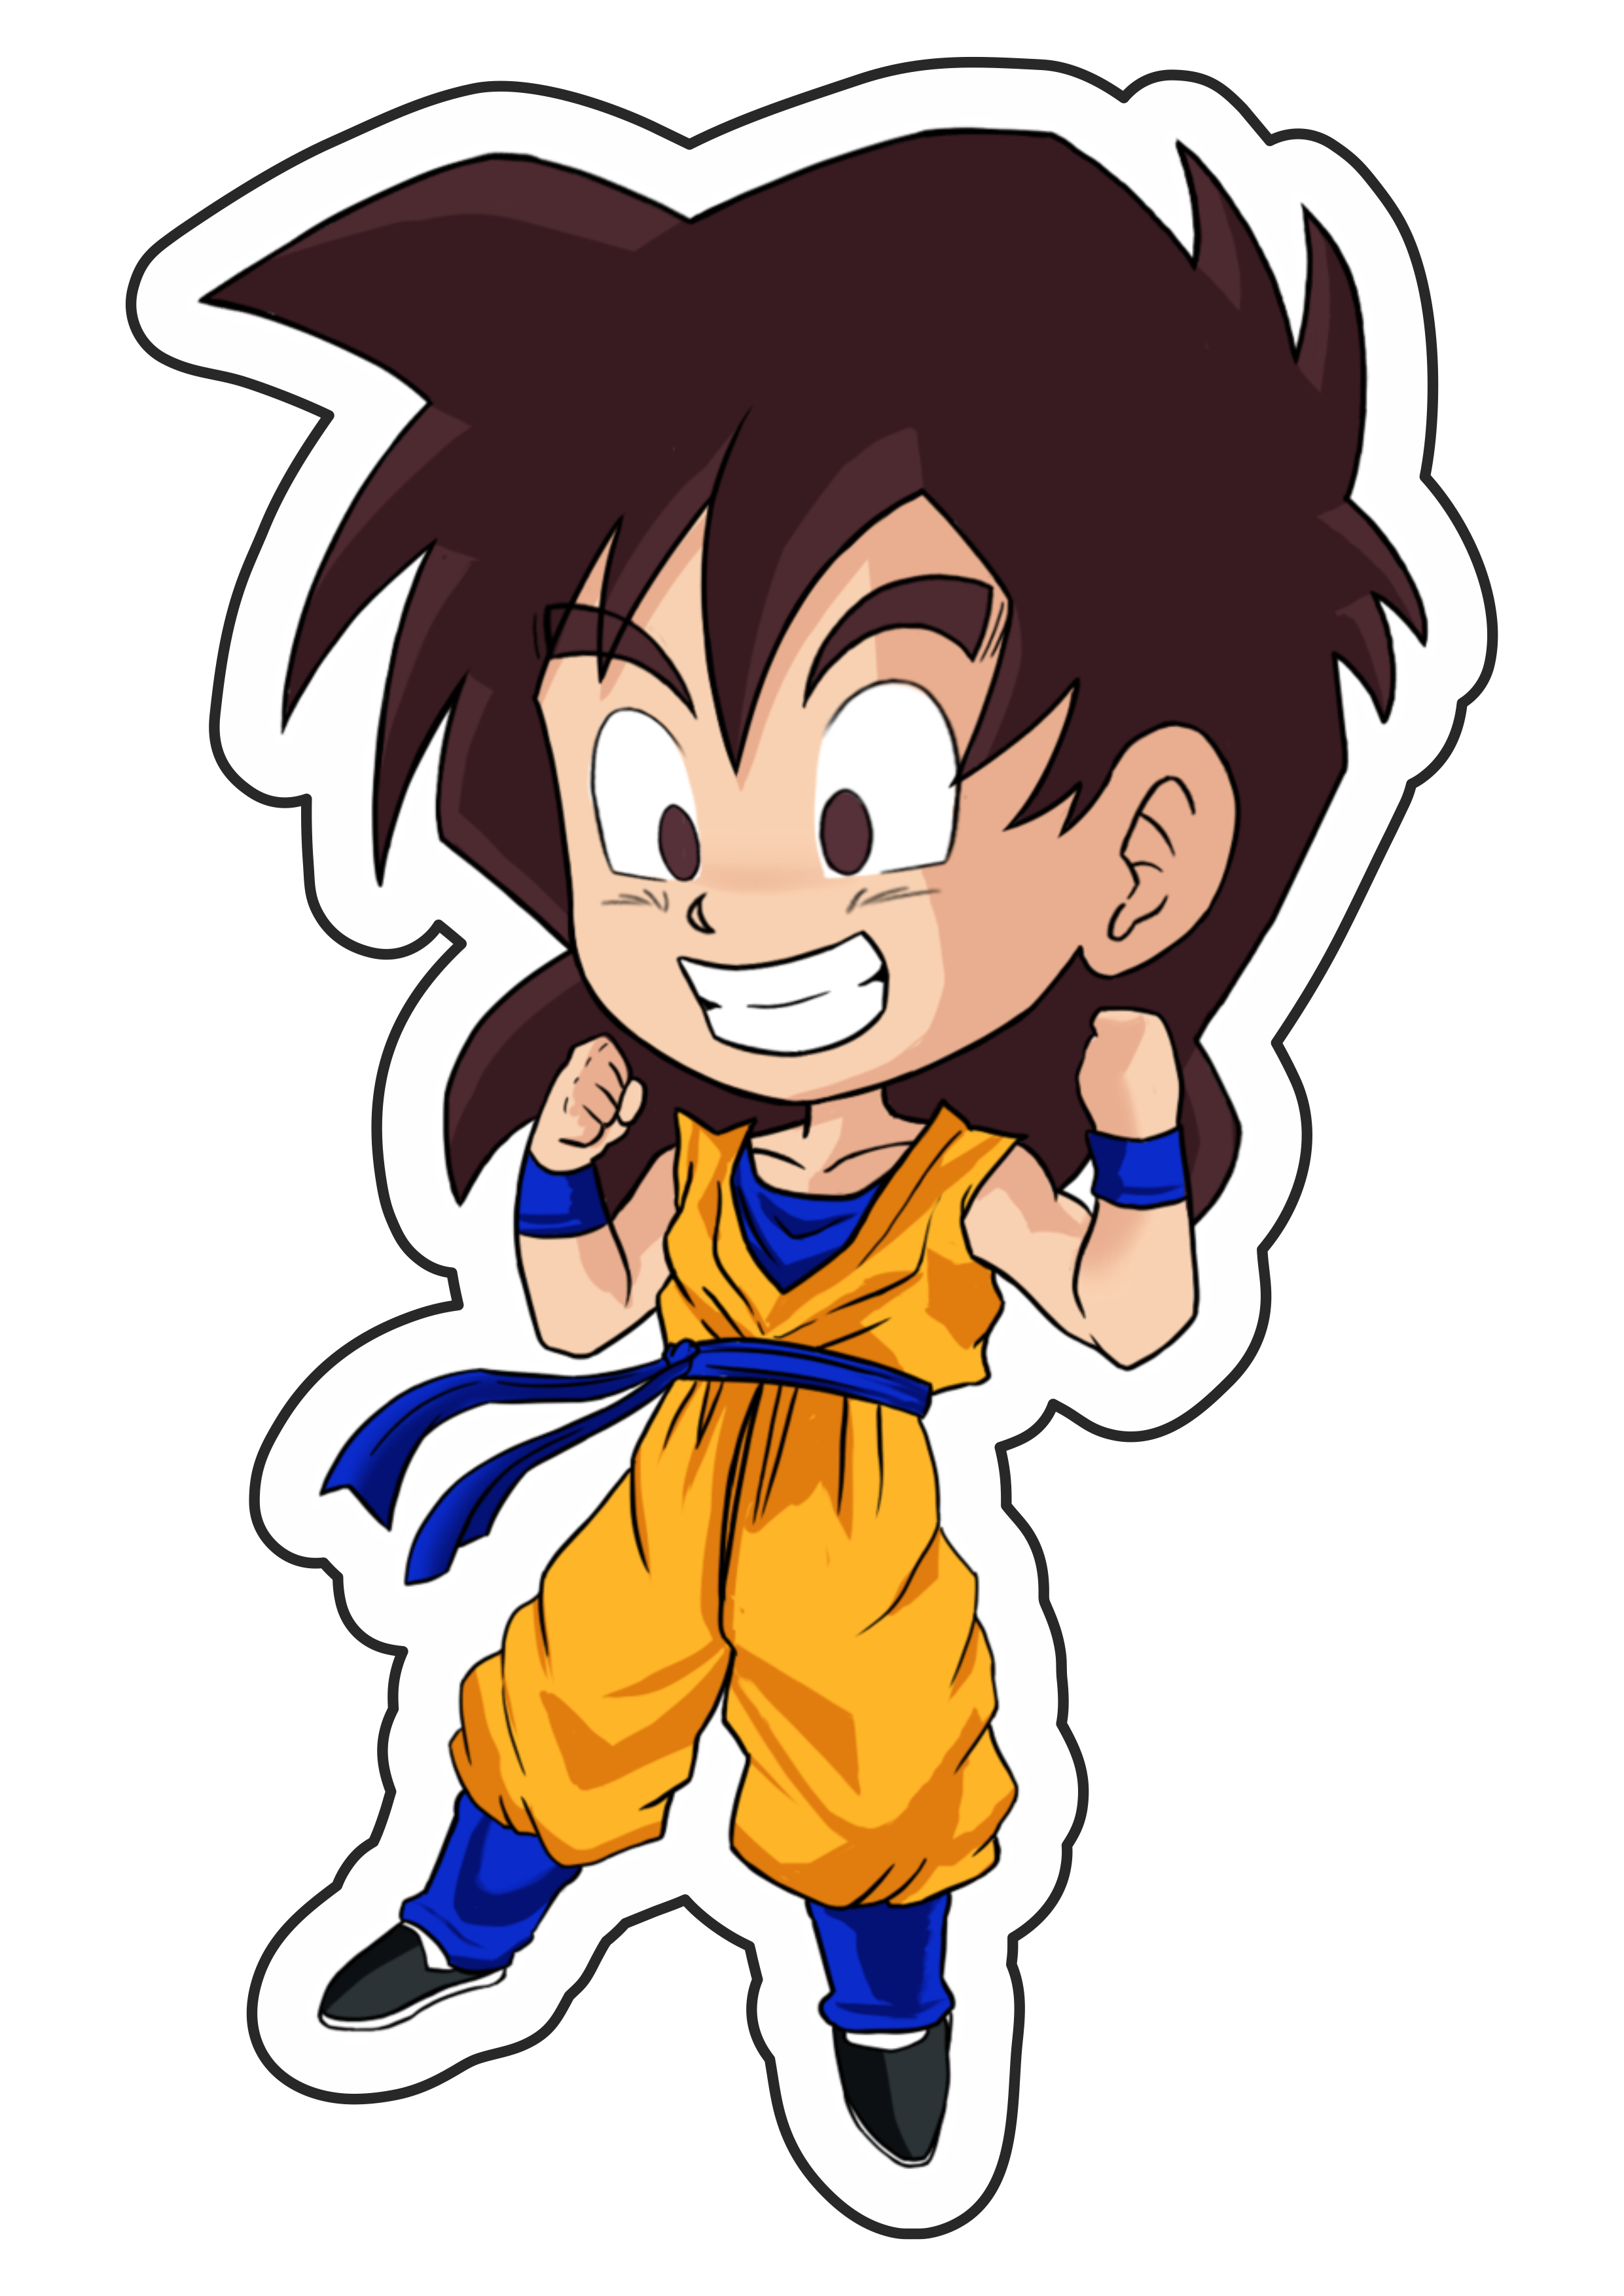 Dragon ball z super Goku cute desenho infantil anime fundo transparente  pack de imagens png